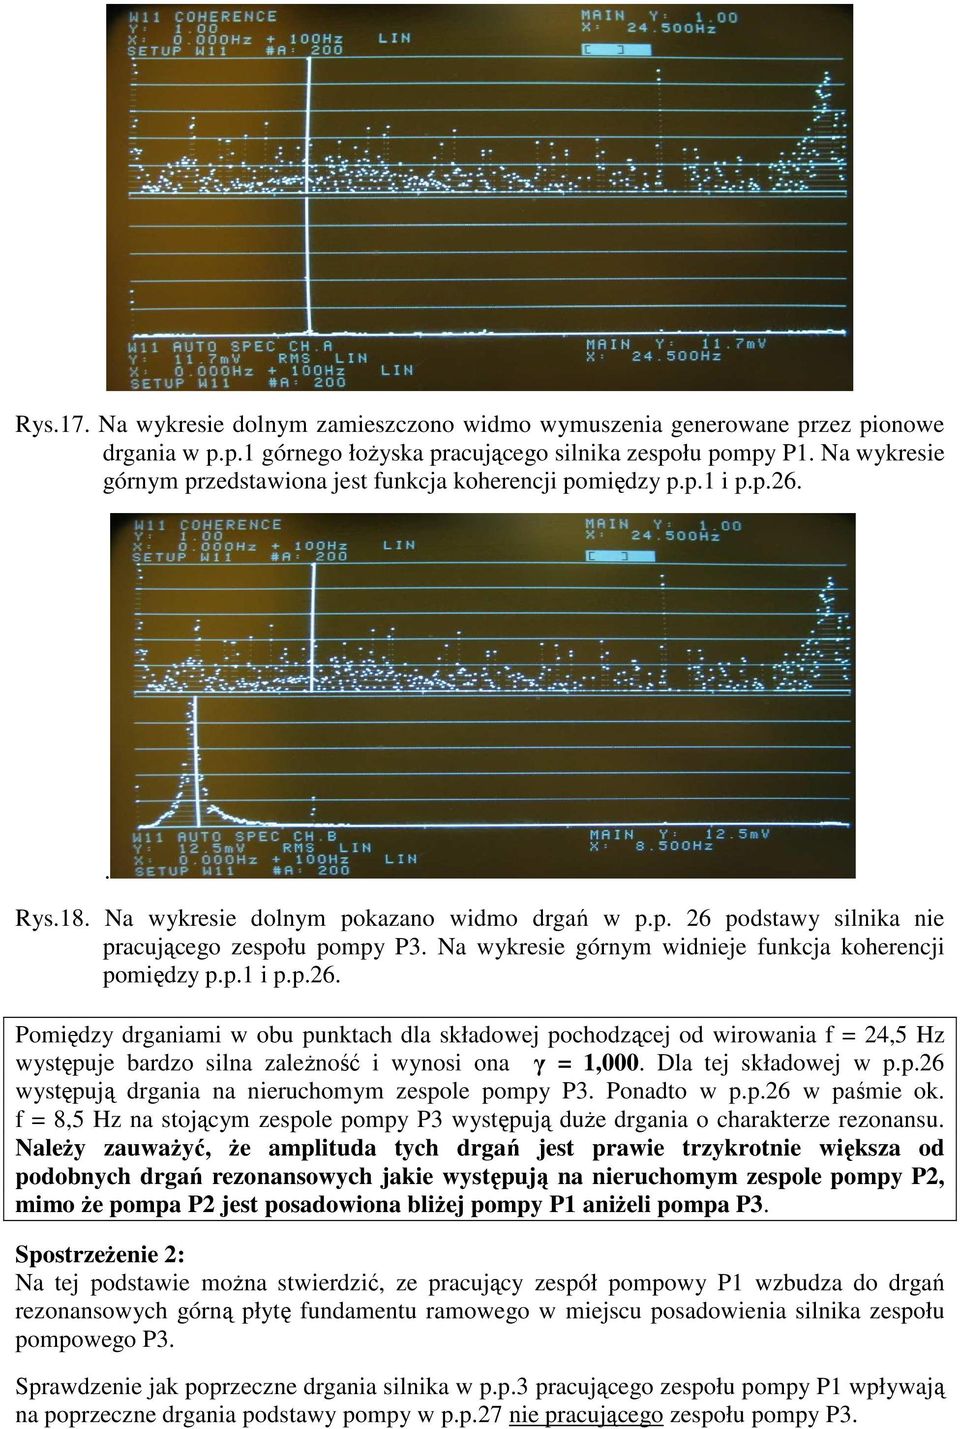 Na wykresie górnym widnieje funkcja koherencji pomiędzy p.p.1 i p.p.26.